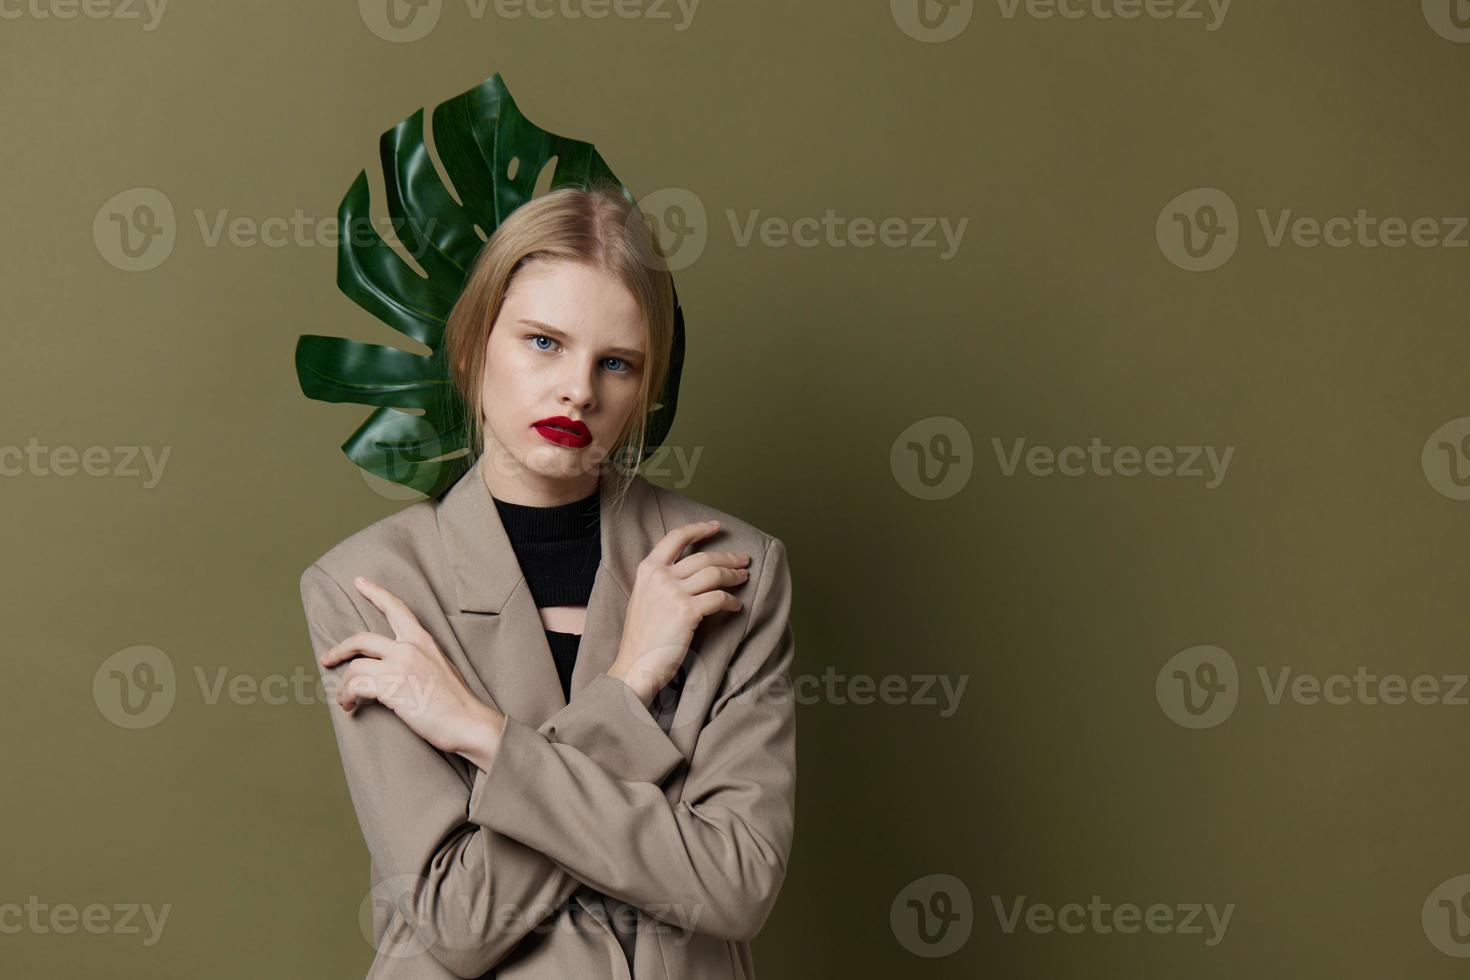 mooi vrouw groen palm blad jas helder bedenken geïsoleerd achtergrond foto